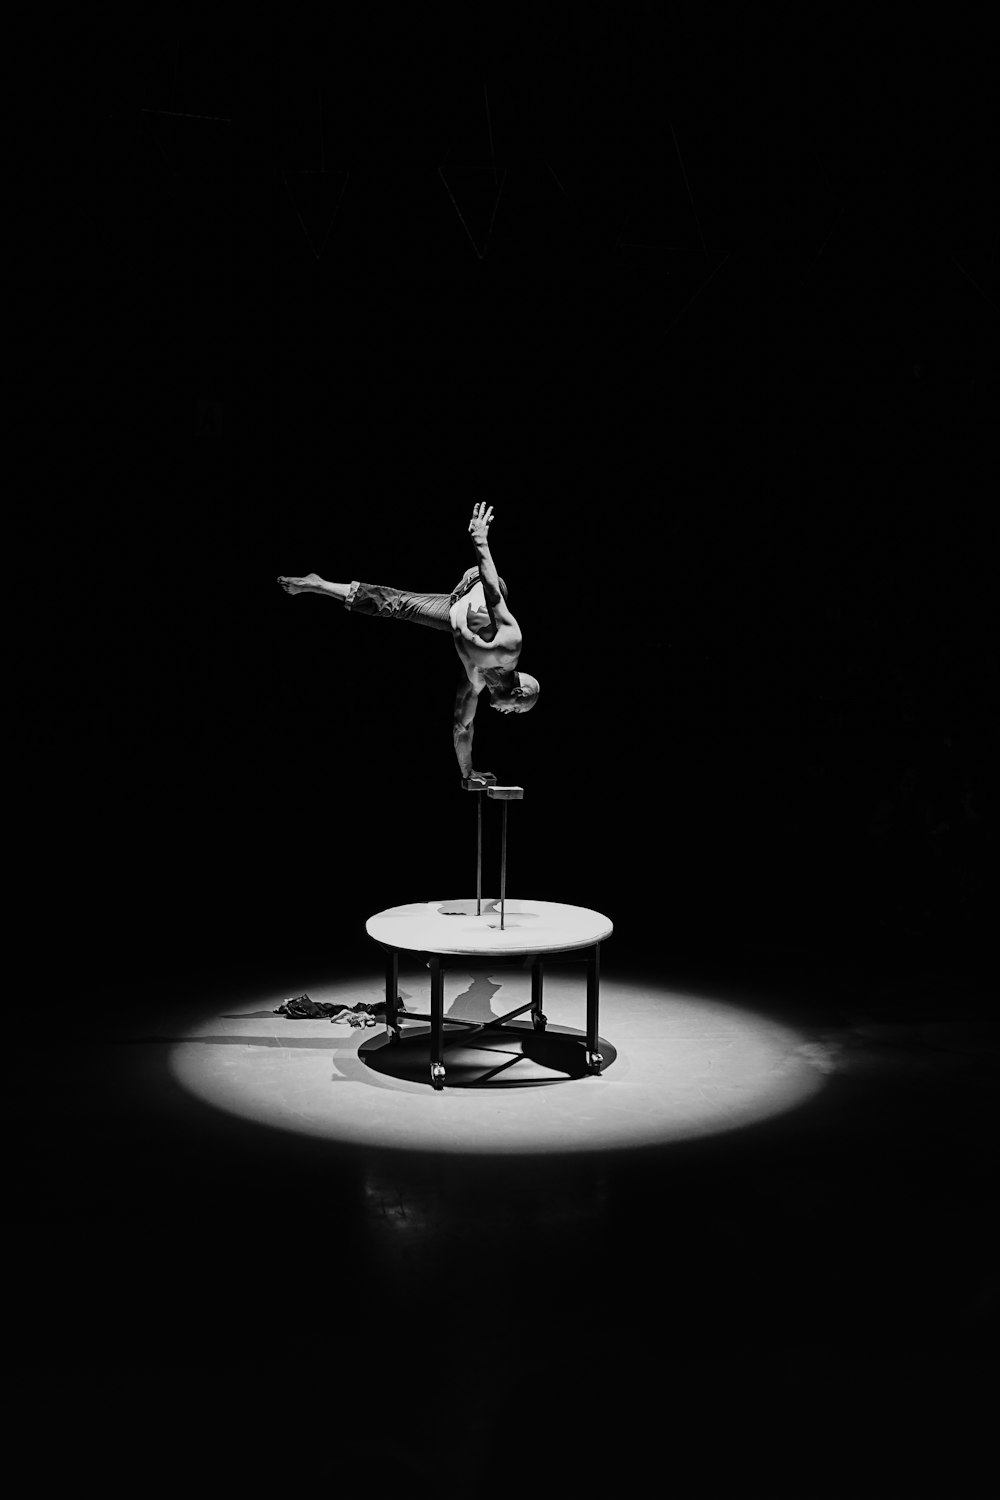 Fotografía en escala de grises de un hombre haciendo acrobacias en una mesa redonda